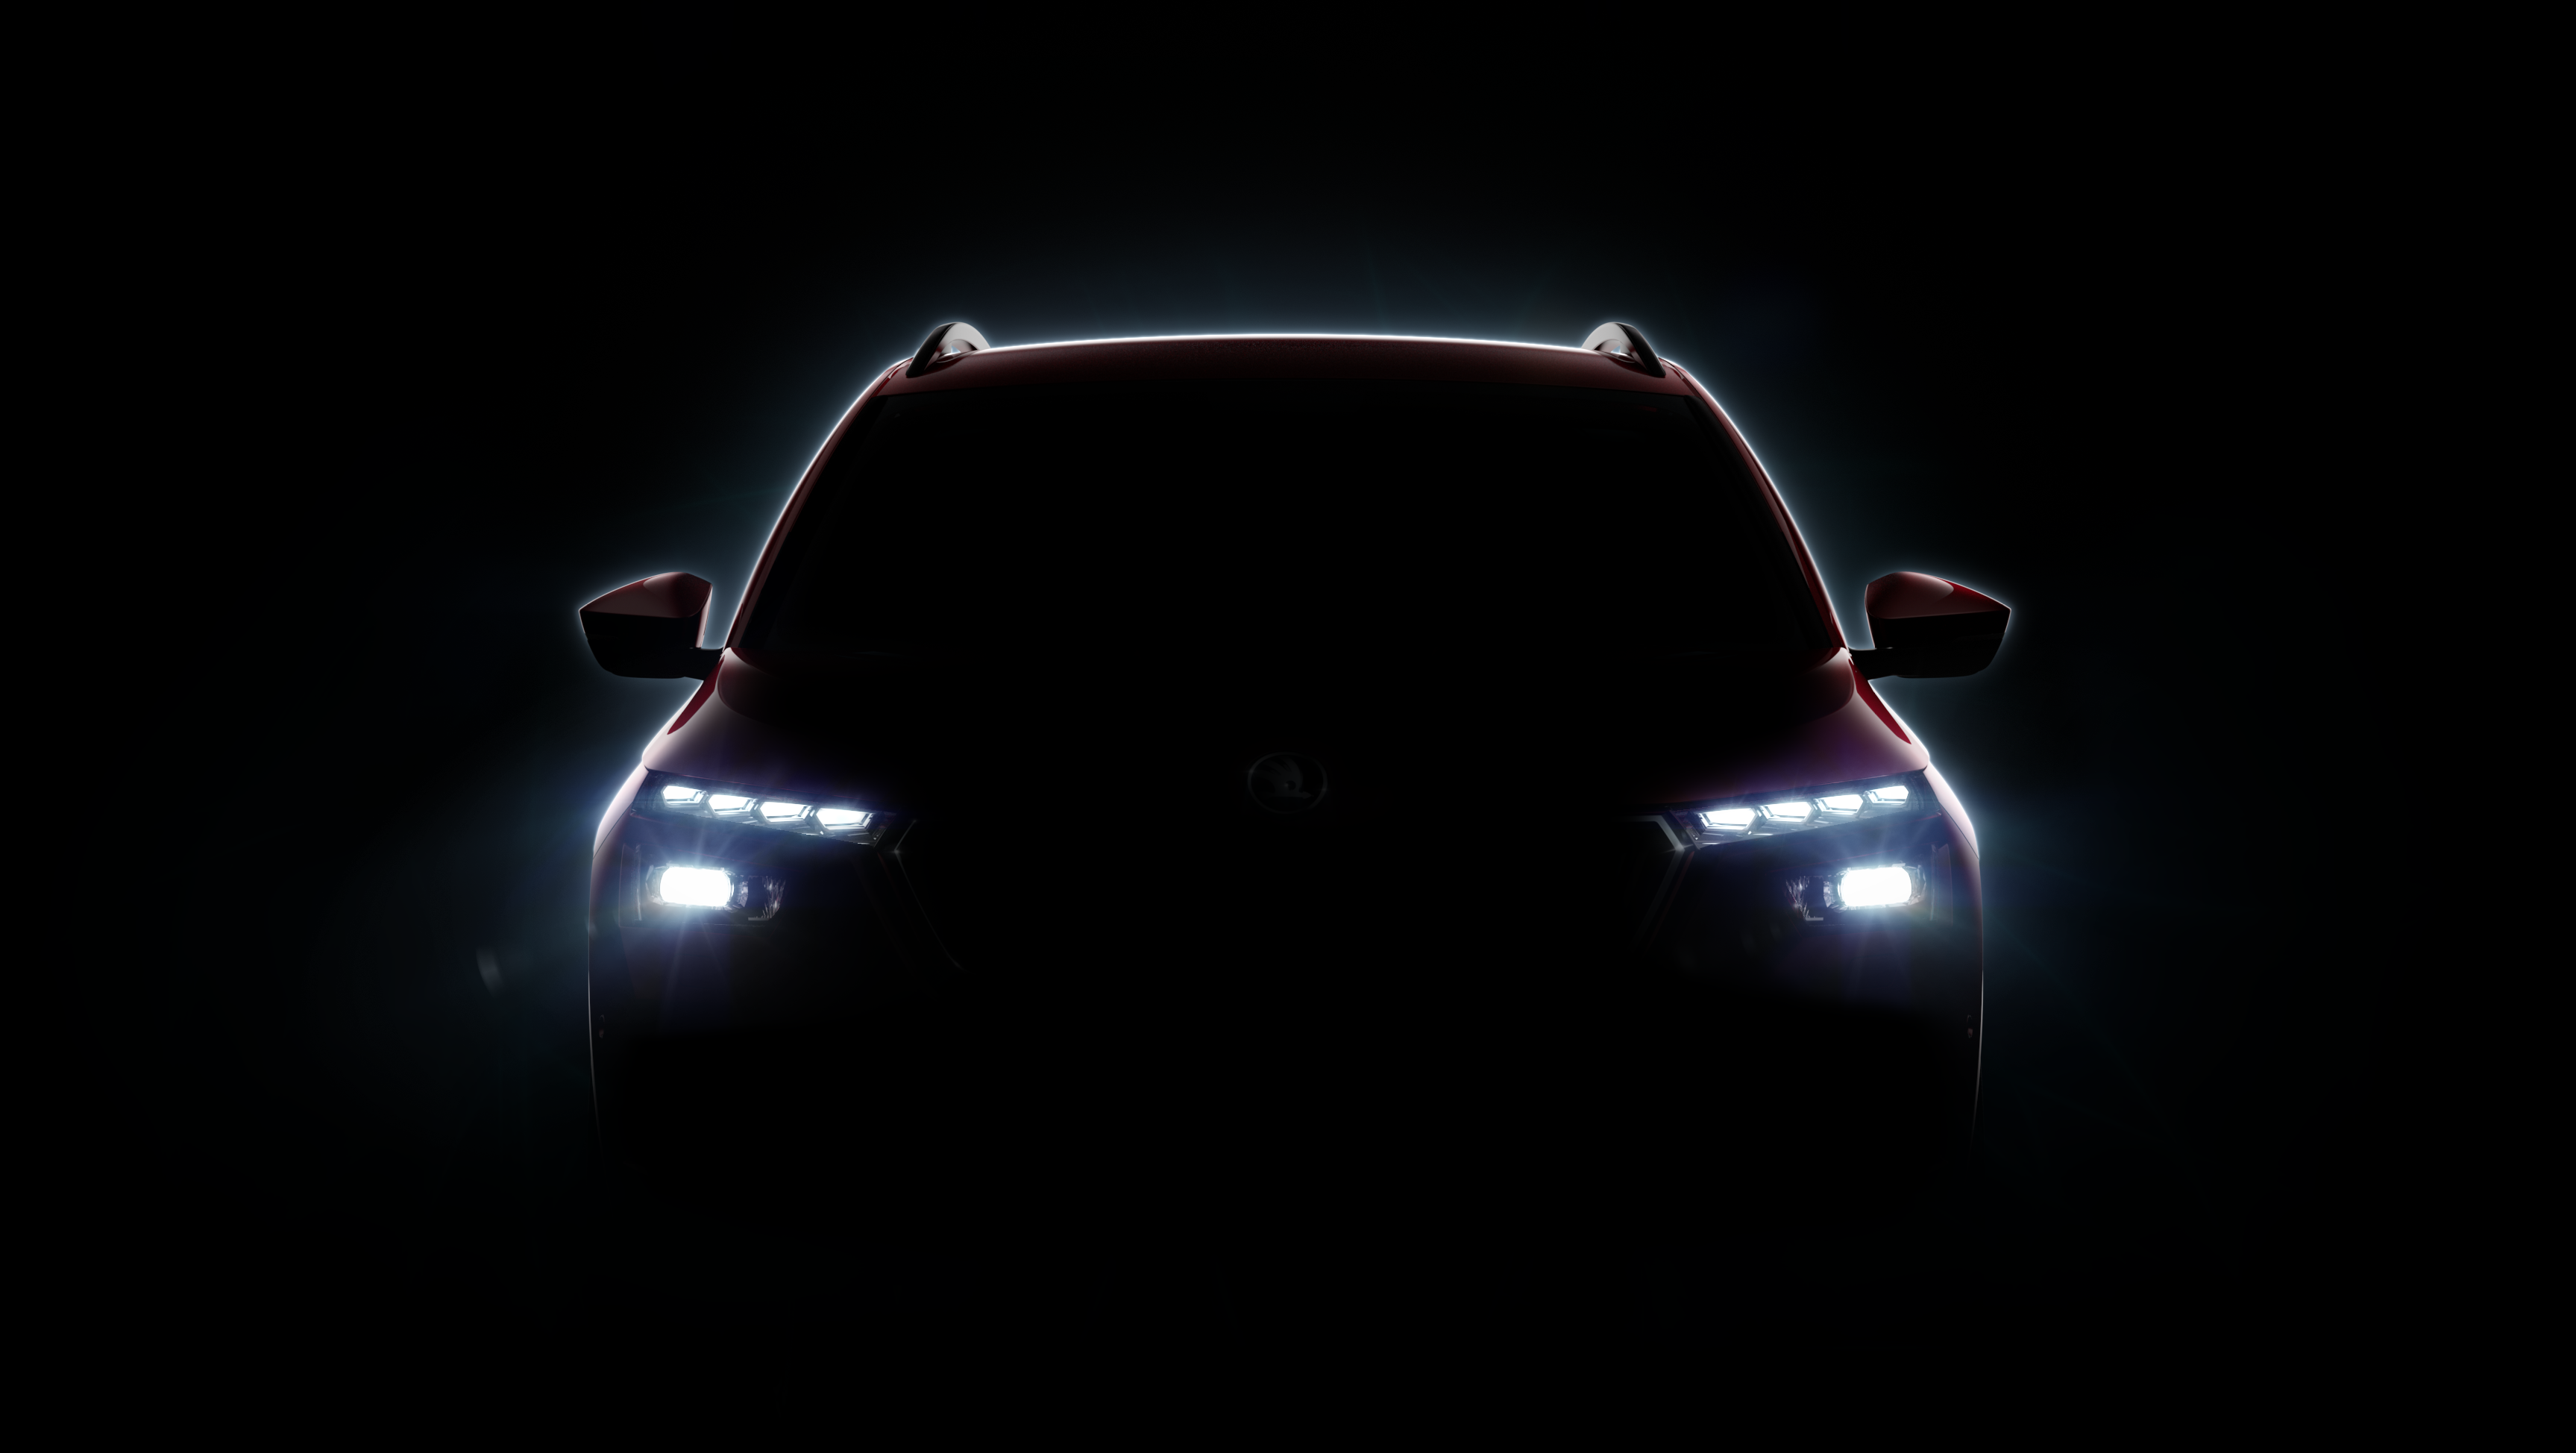 Svetska premijera novog crossover modela: ŠKODA proširuje svoju SUV porodicu